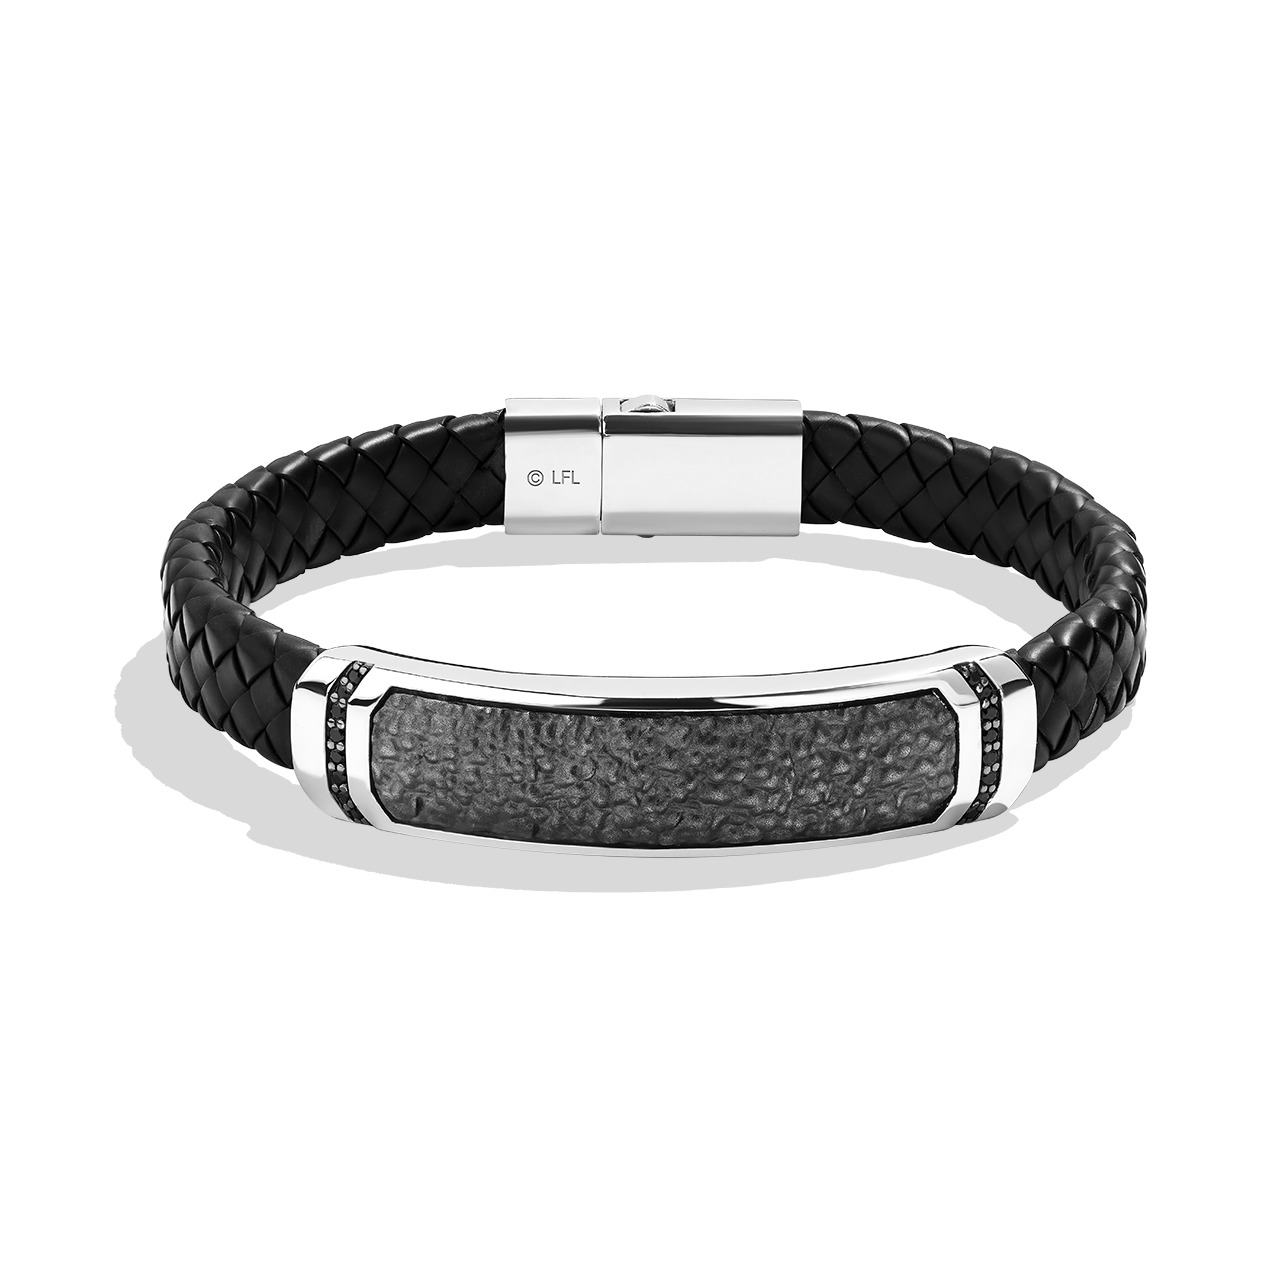 Fashion Frill Leather Bracelet For Men Stainless Steel Stylish Black  Bracelet For Men Boys FFBL108 at Rs 135 in Delhi